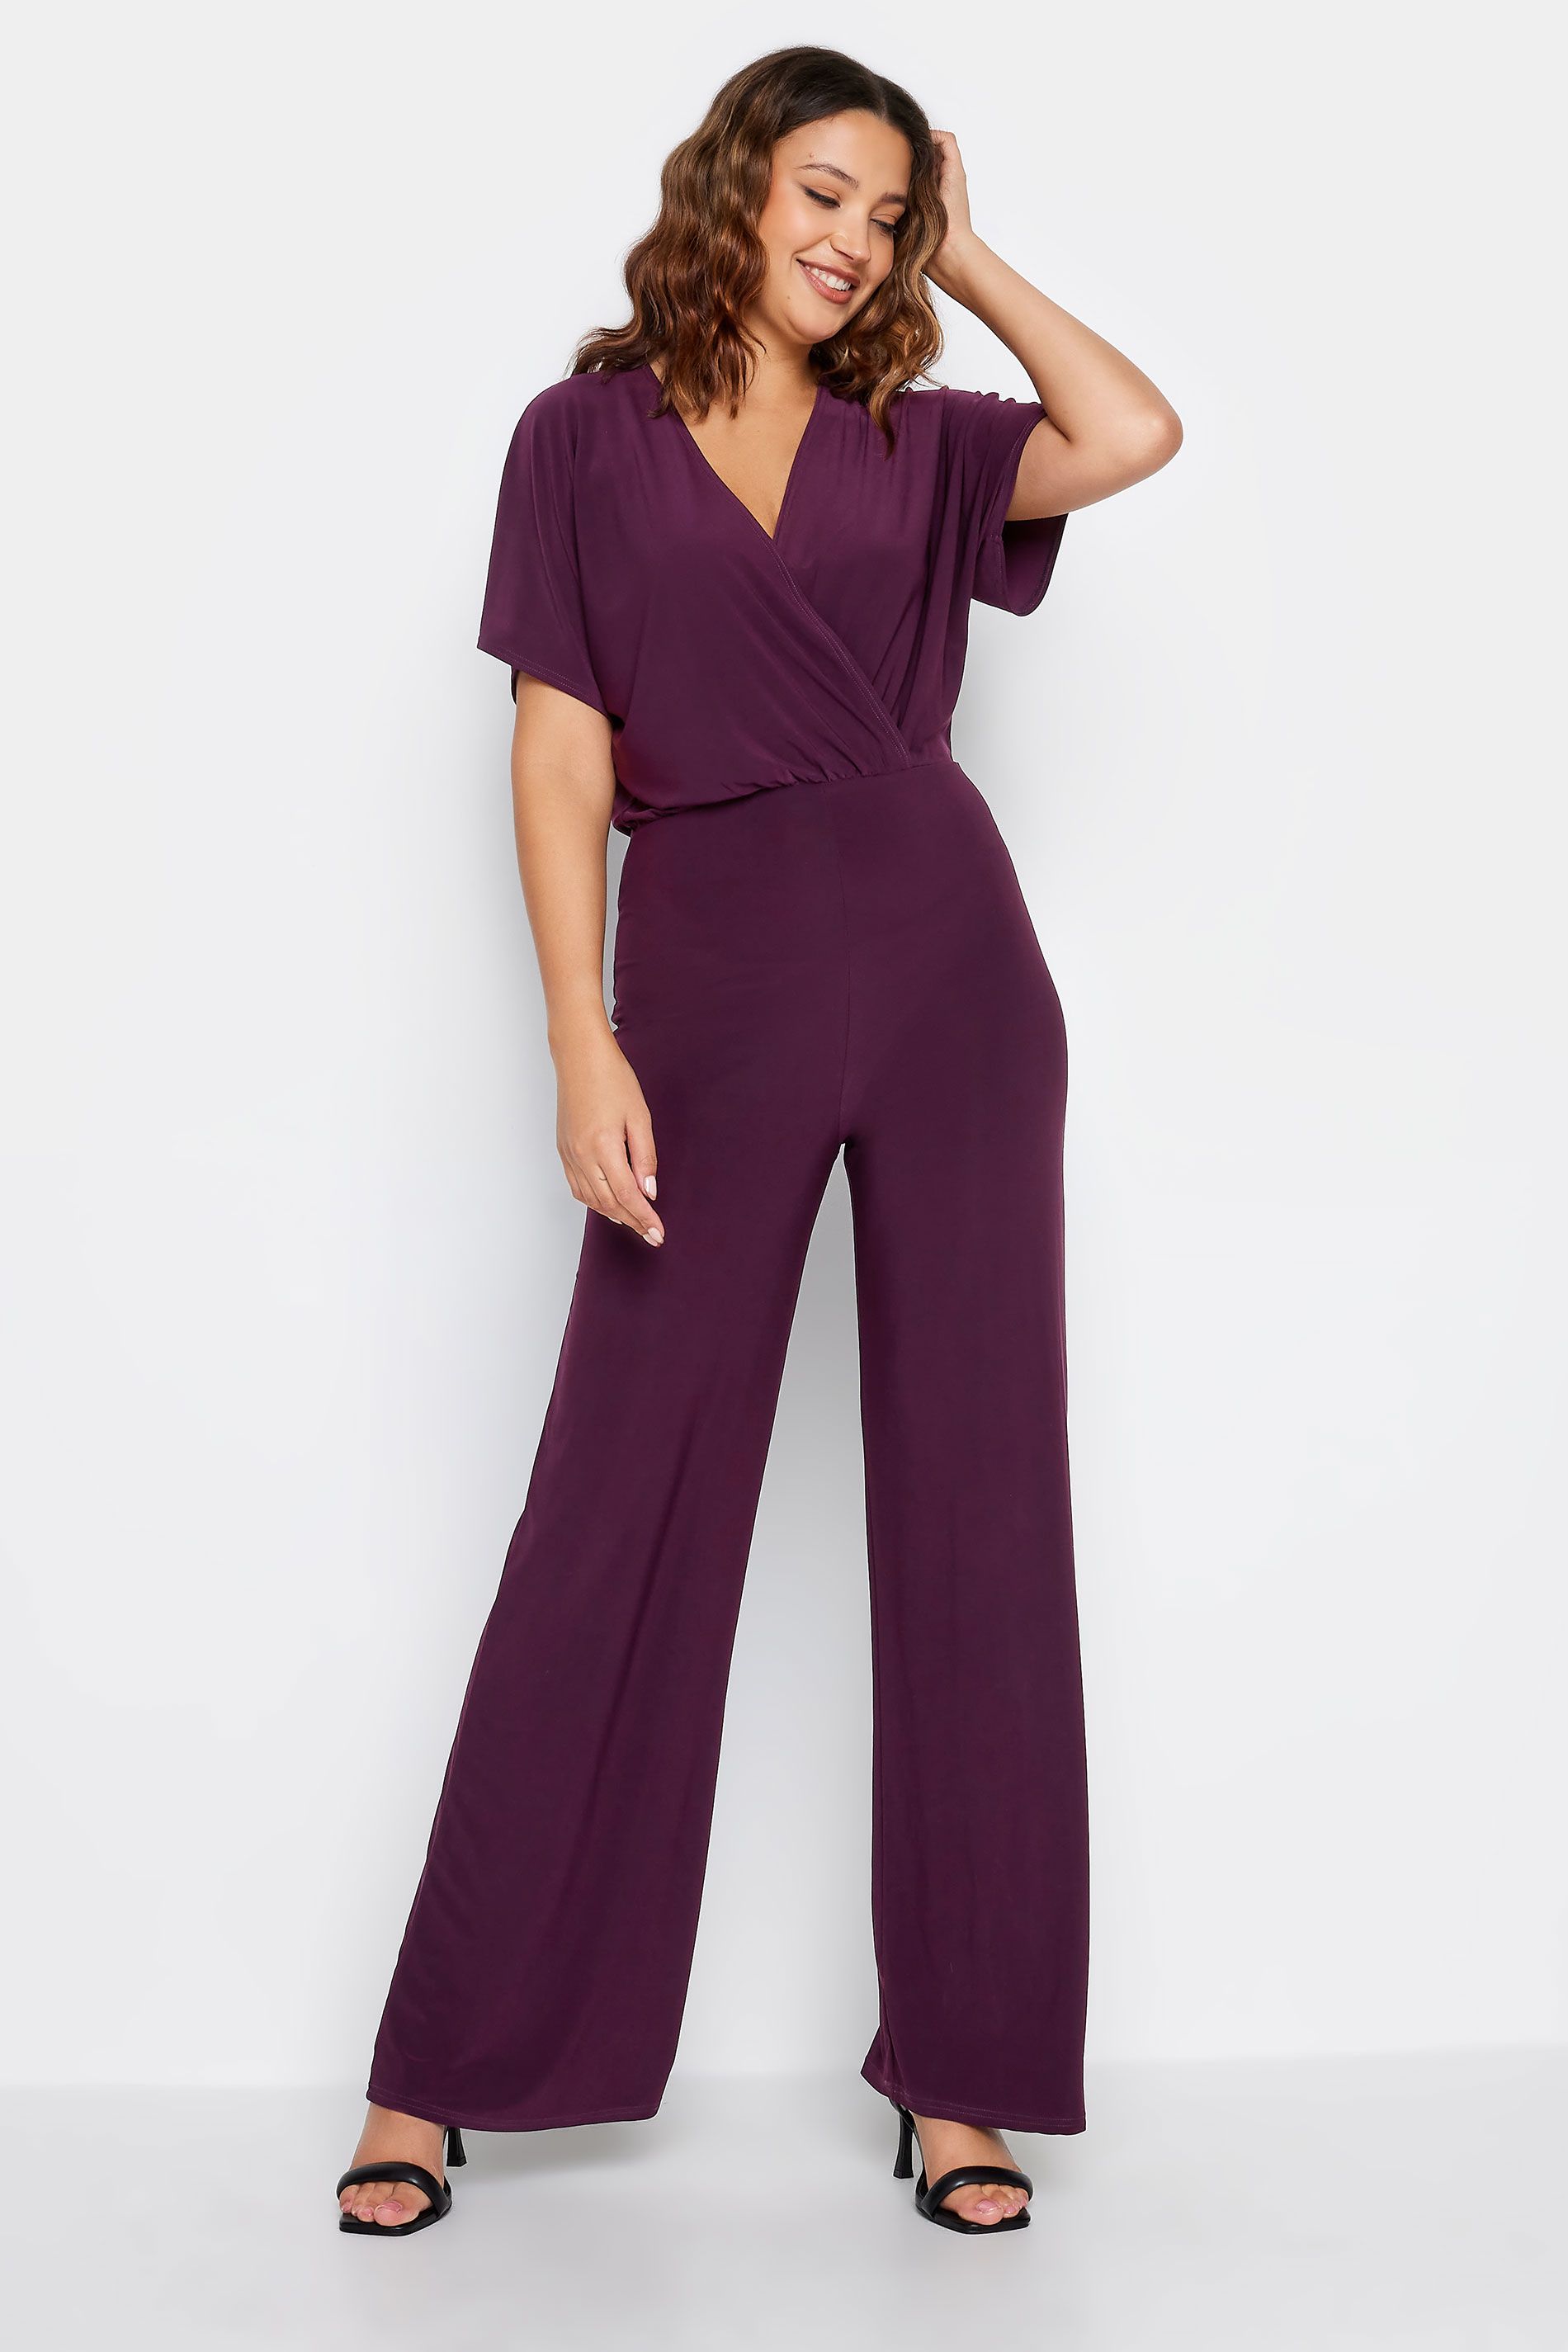 LTS Tall Dark Purple V-Neck Wrap Jumpsuit | Long Tall Sally